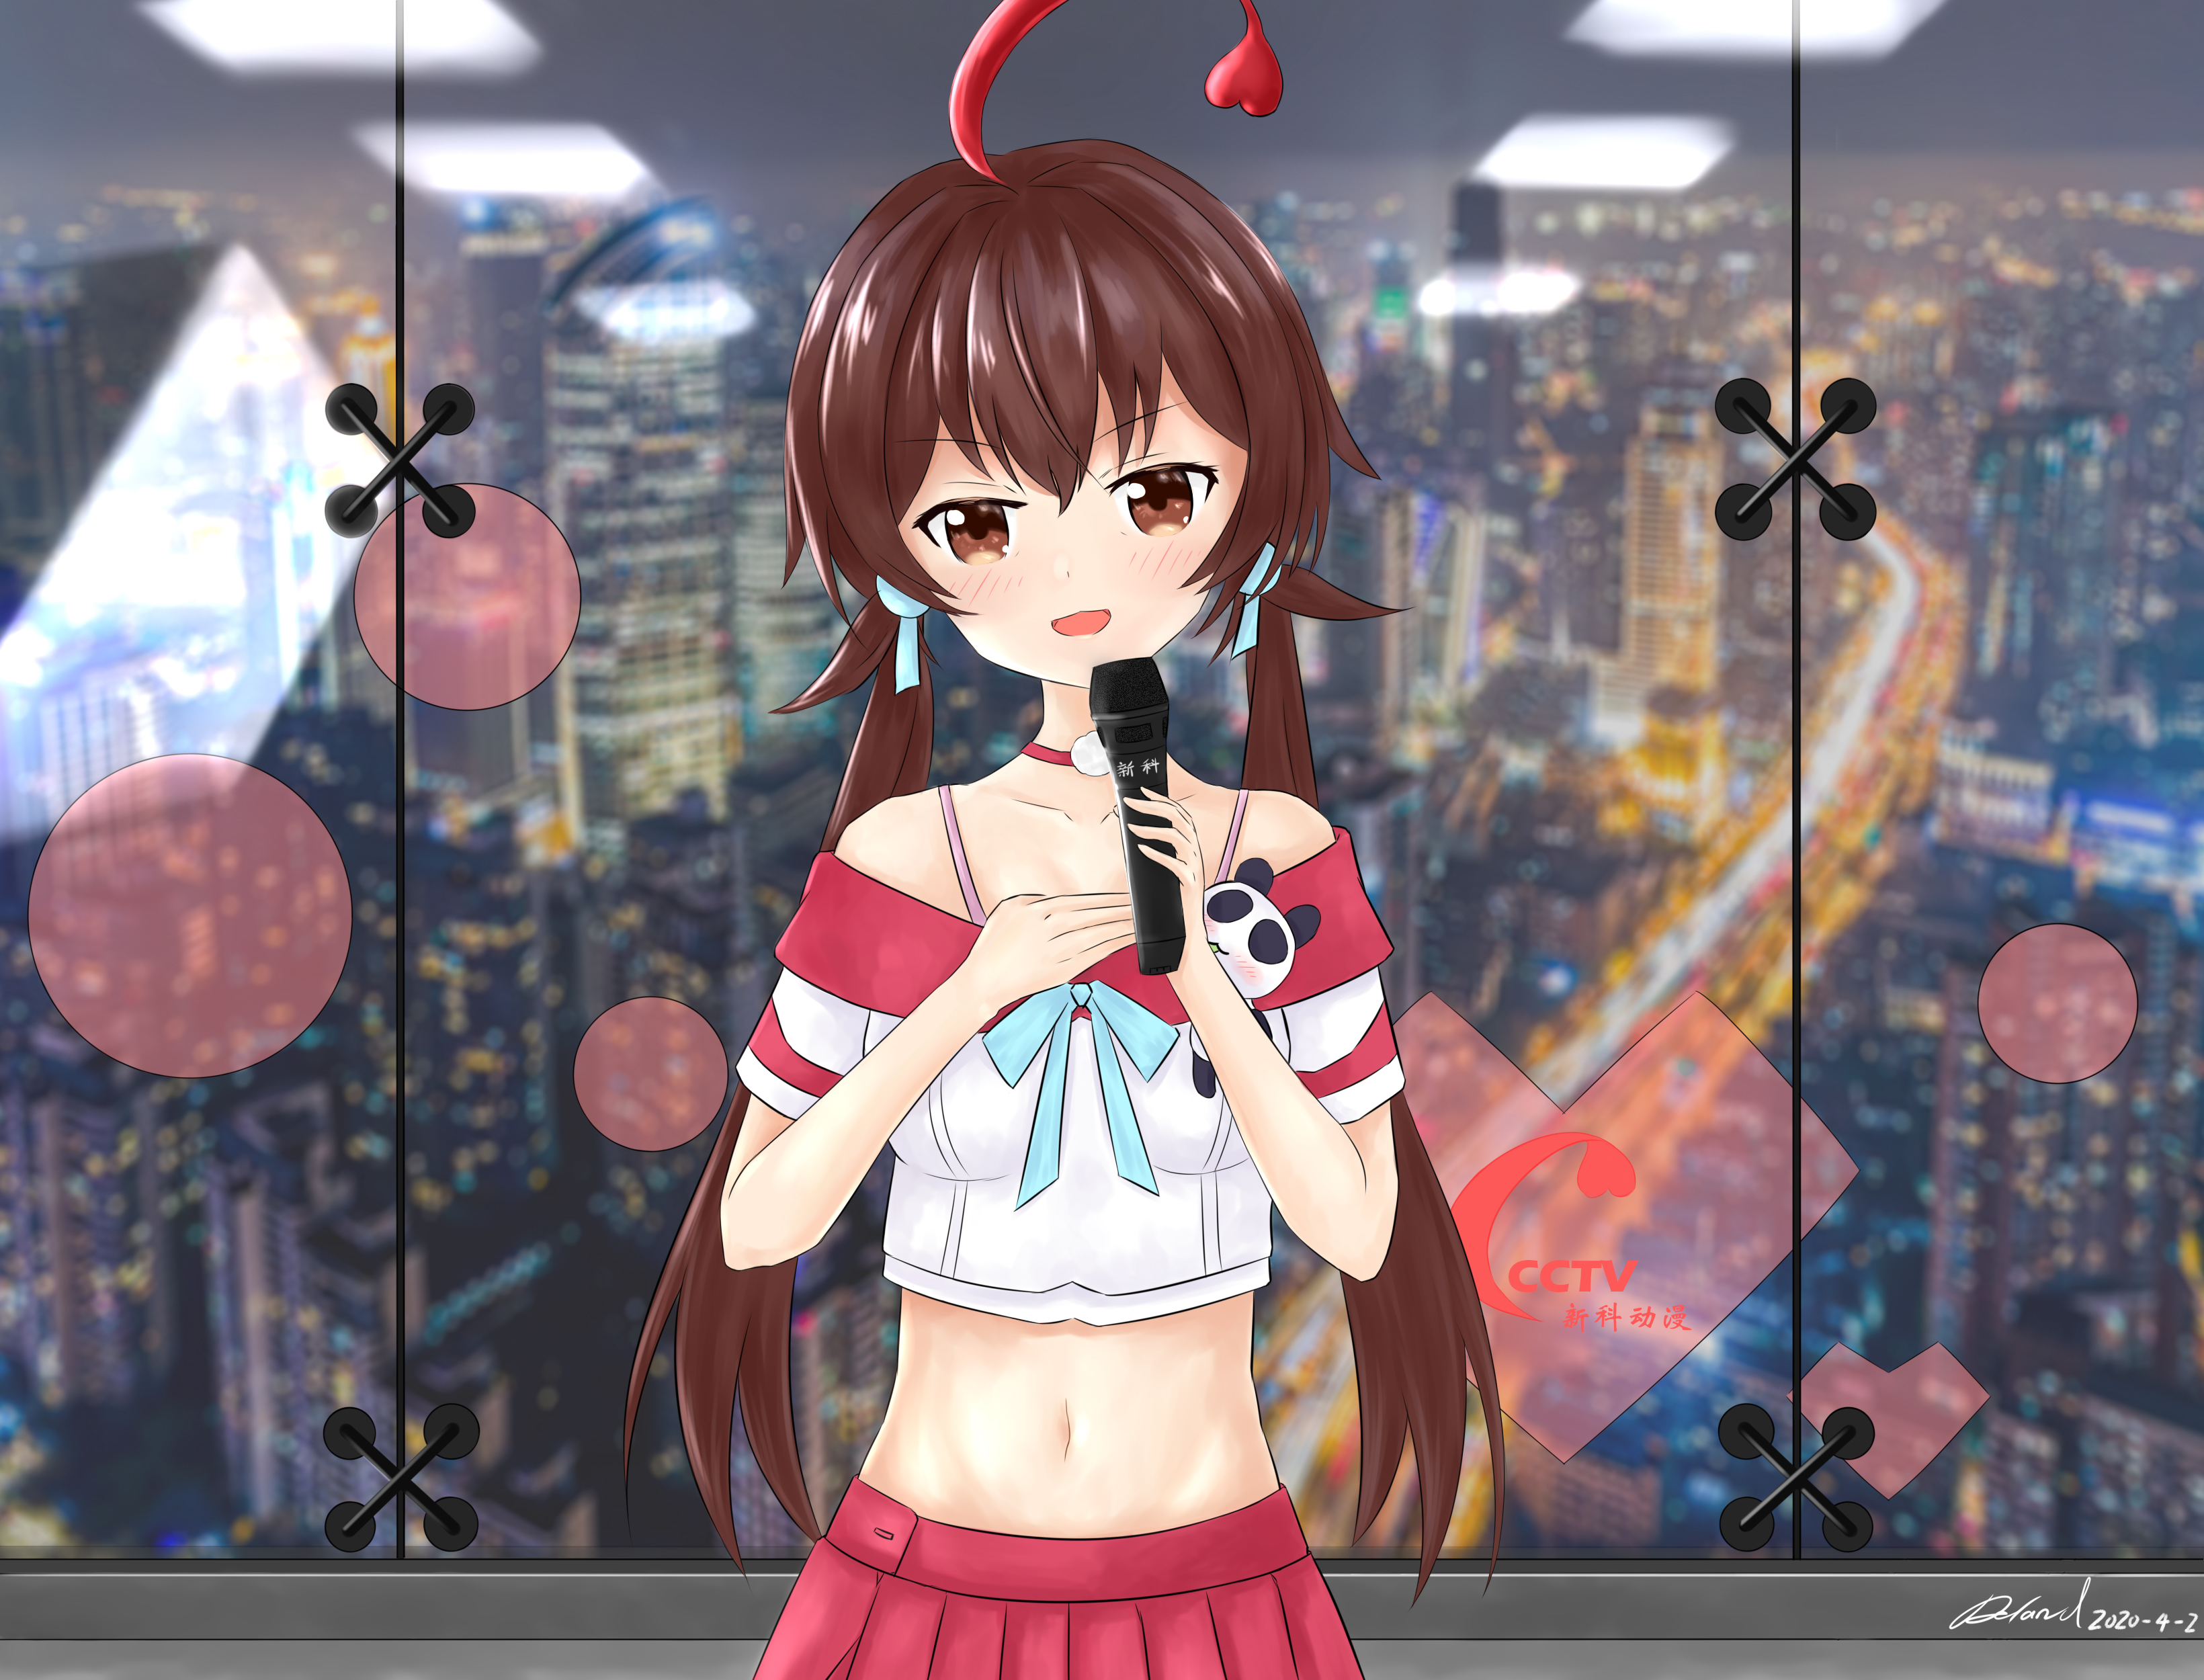 Anime Anime Girls Virtual Youtuber Shinka Musume Long Hair Brunette Artwork Digital Art Fan Art 3280x2500